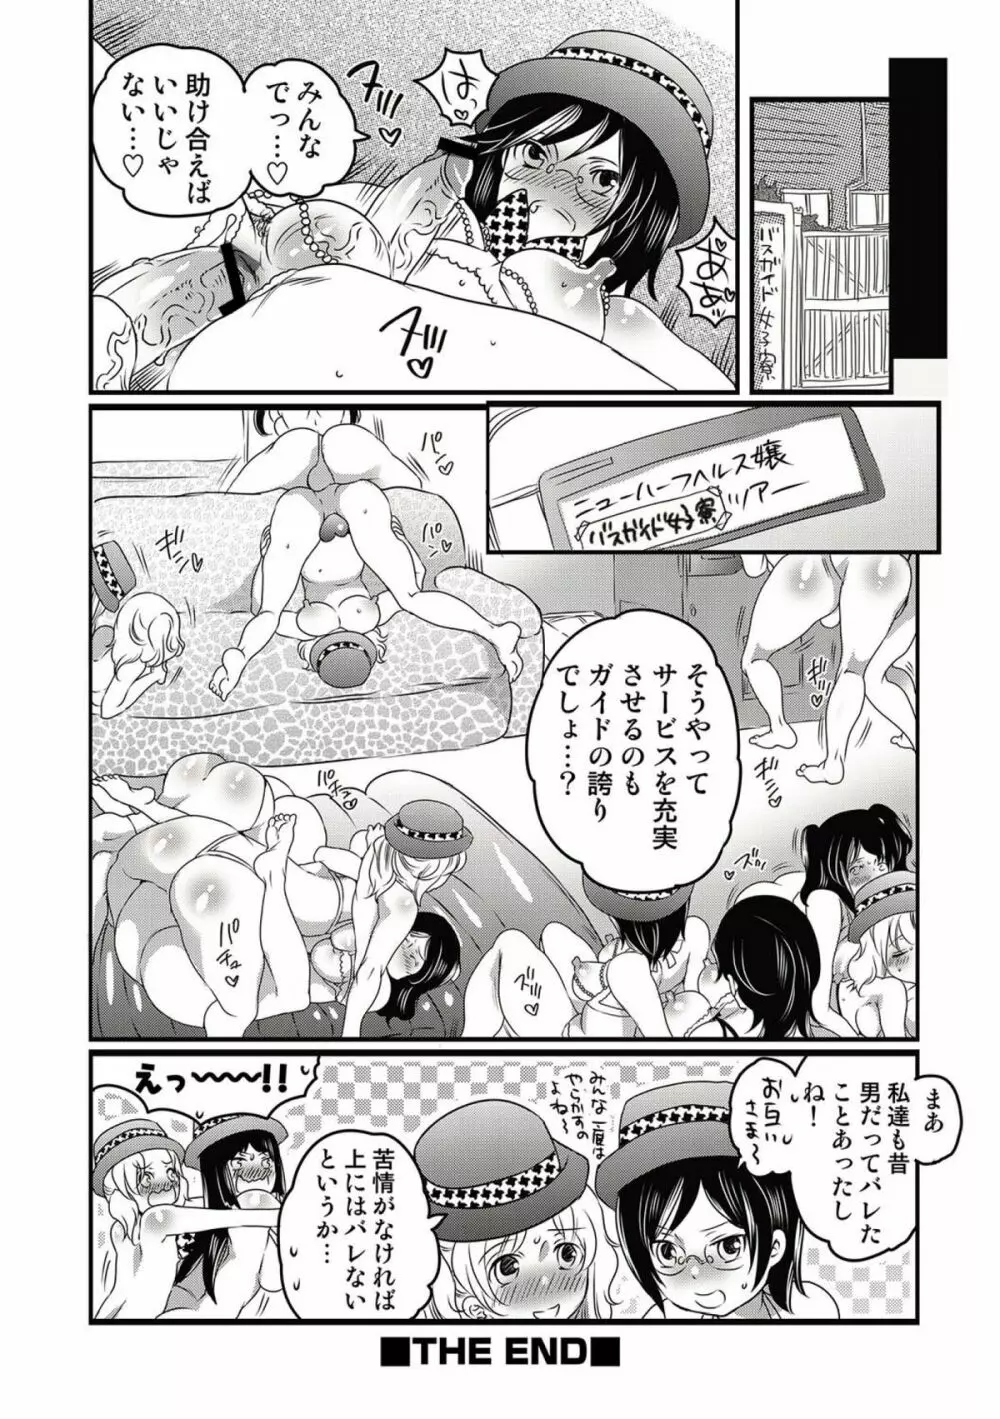 COMICしちゅぷれ vol.15 50ページ